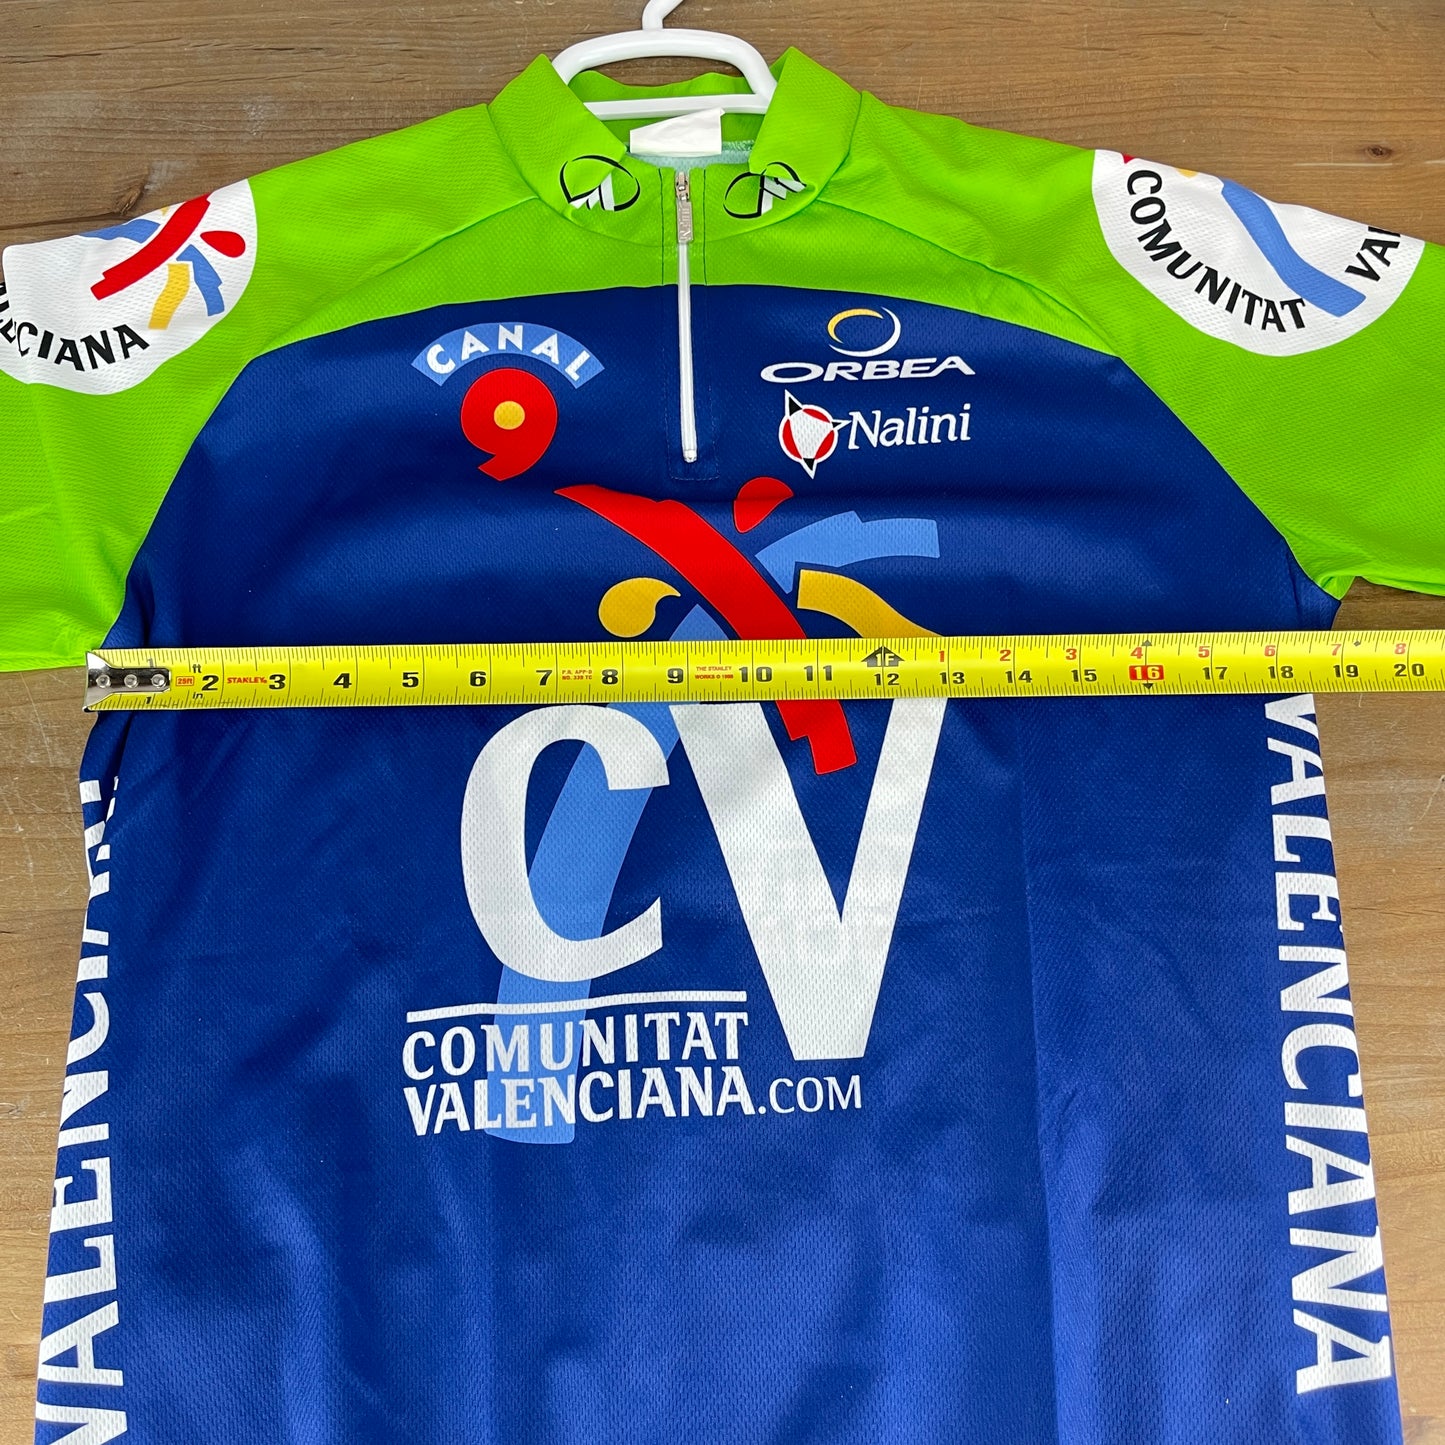 Nalini Men's Size 5 Green/Blue Road Bike Short Sleeve Cycling Jersey 170g